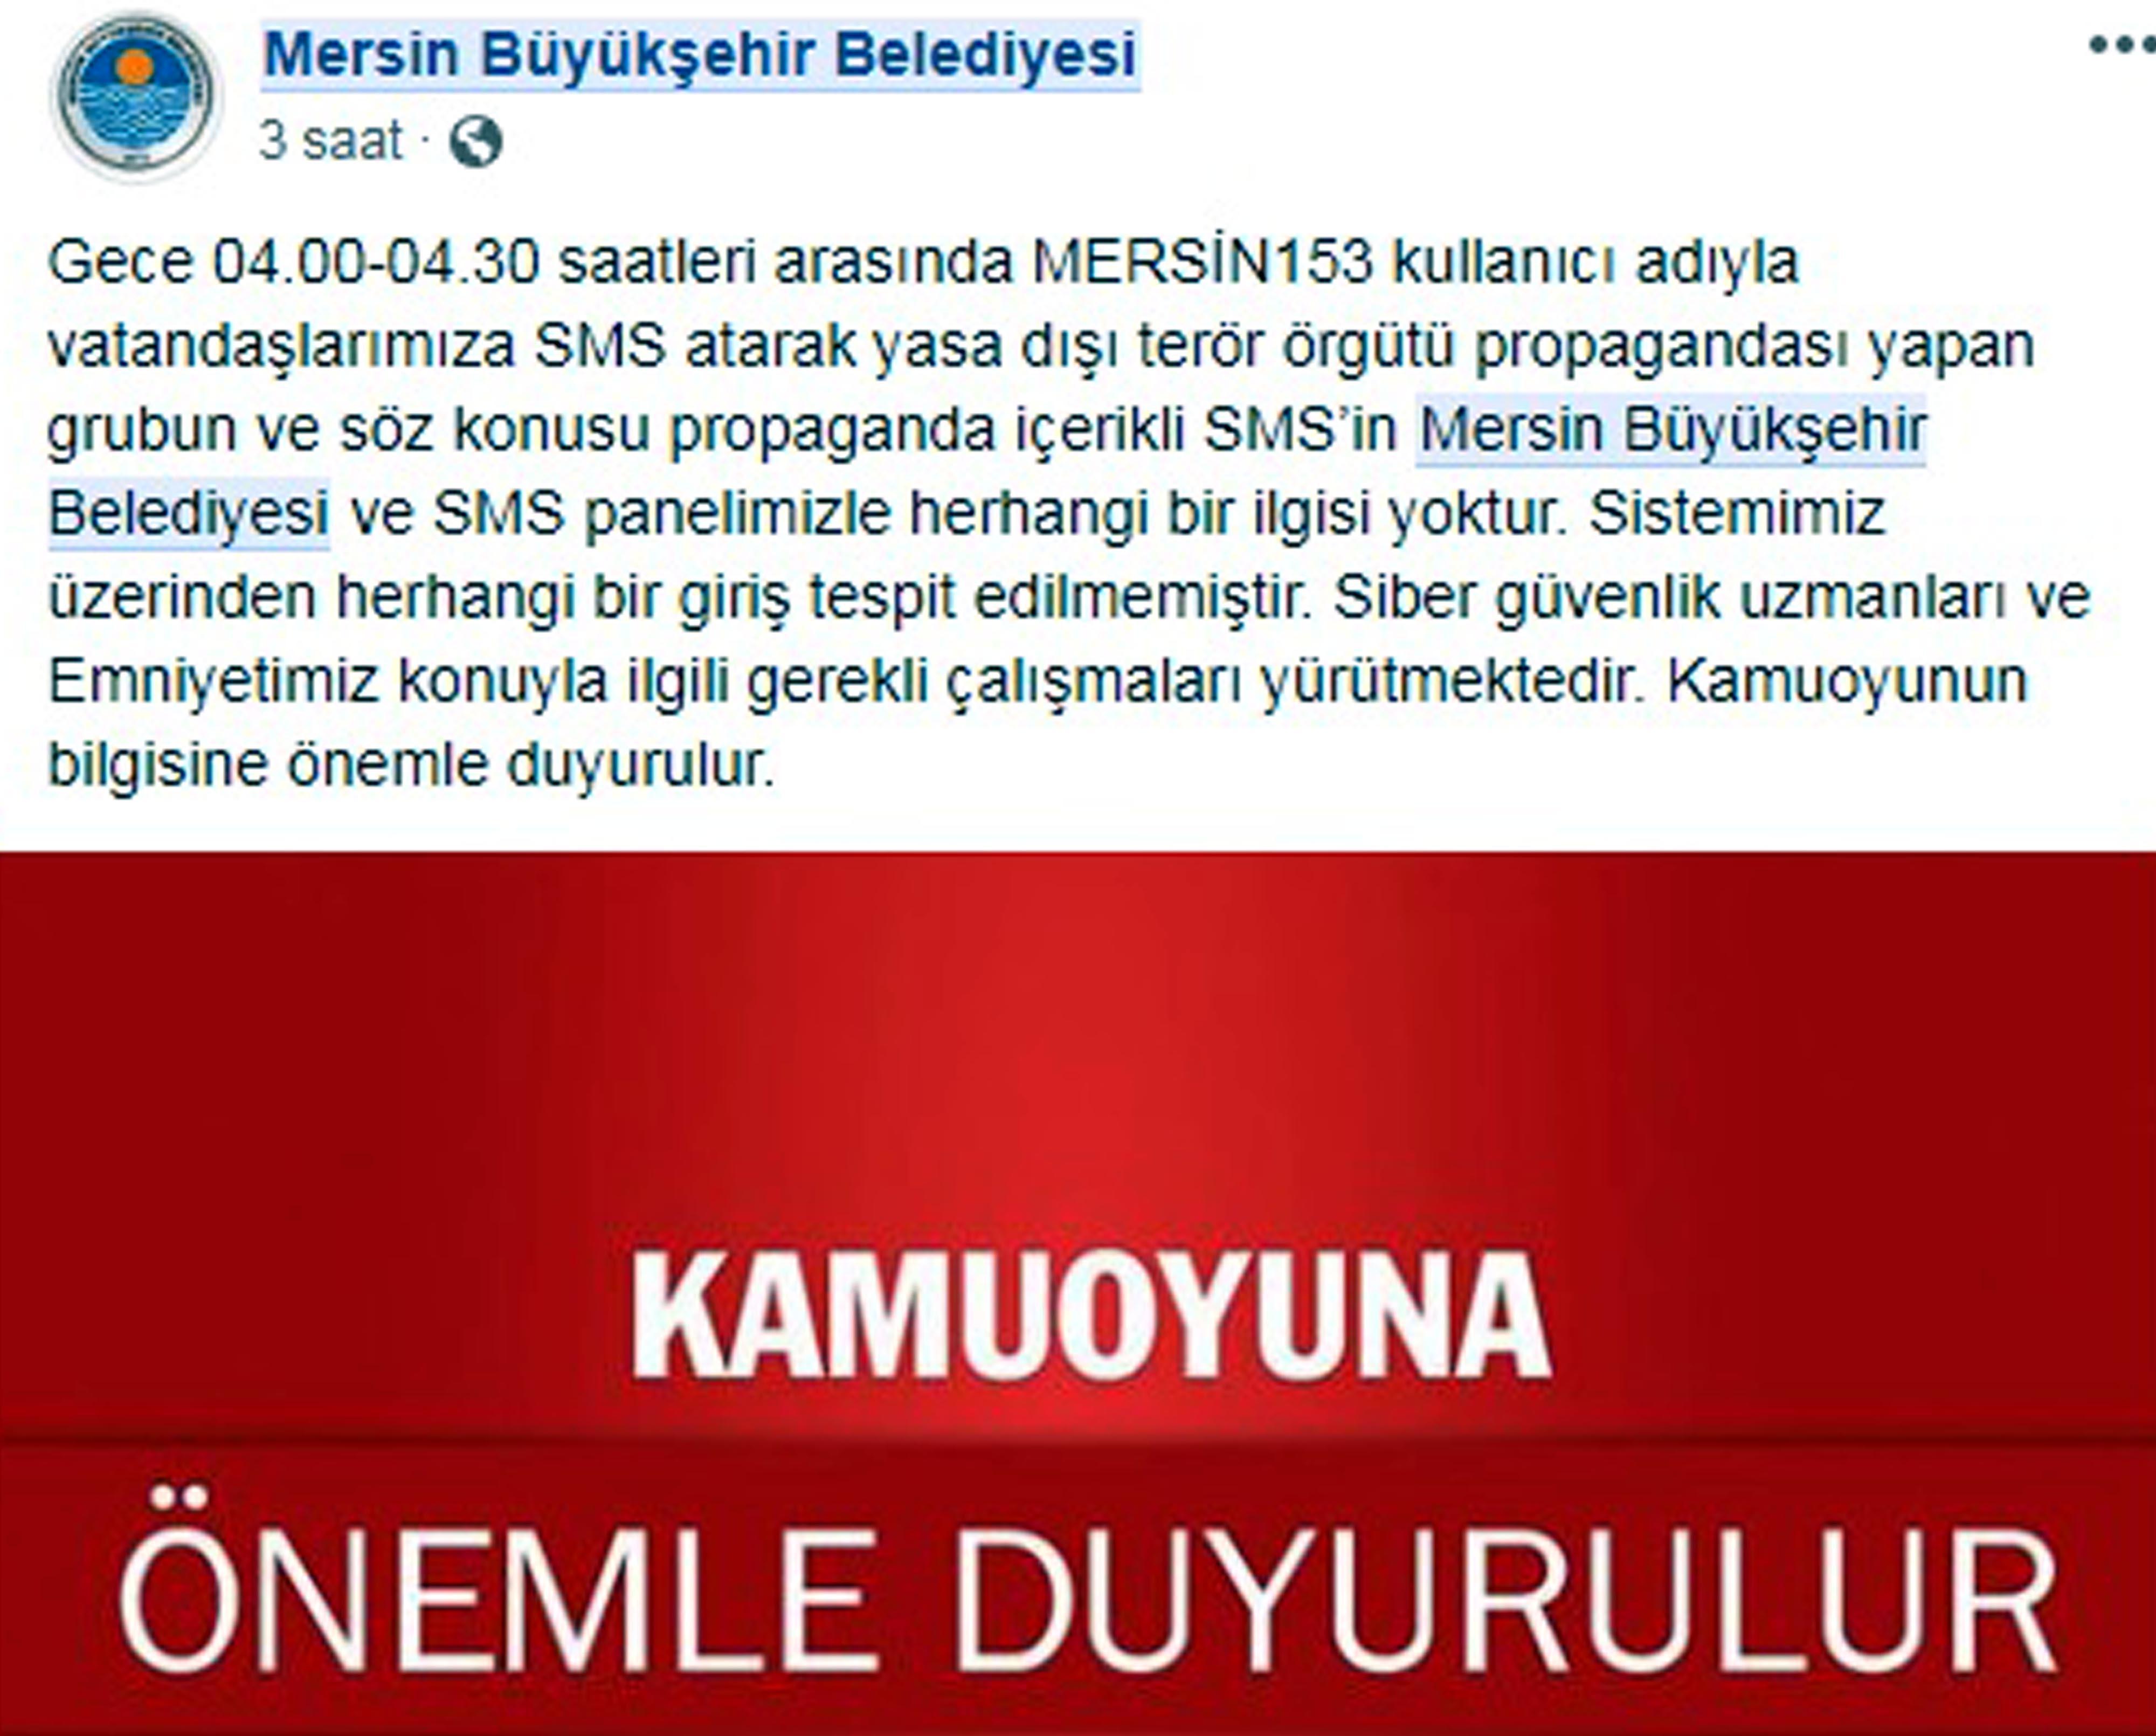 PKK toplu mesaj attı, Mersin karıştı